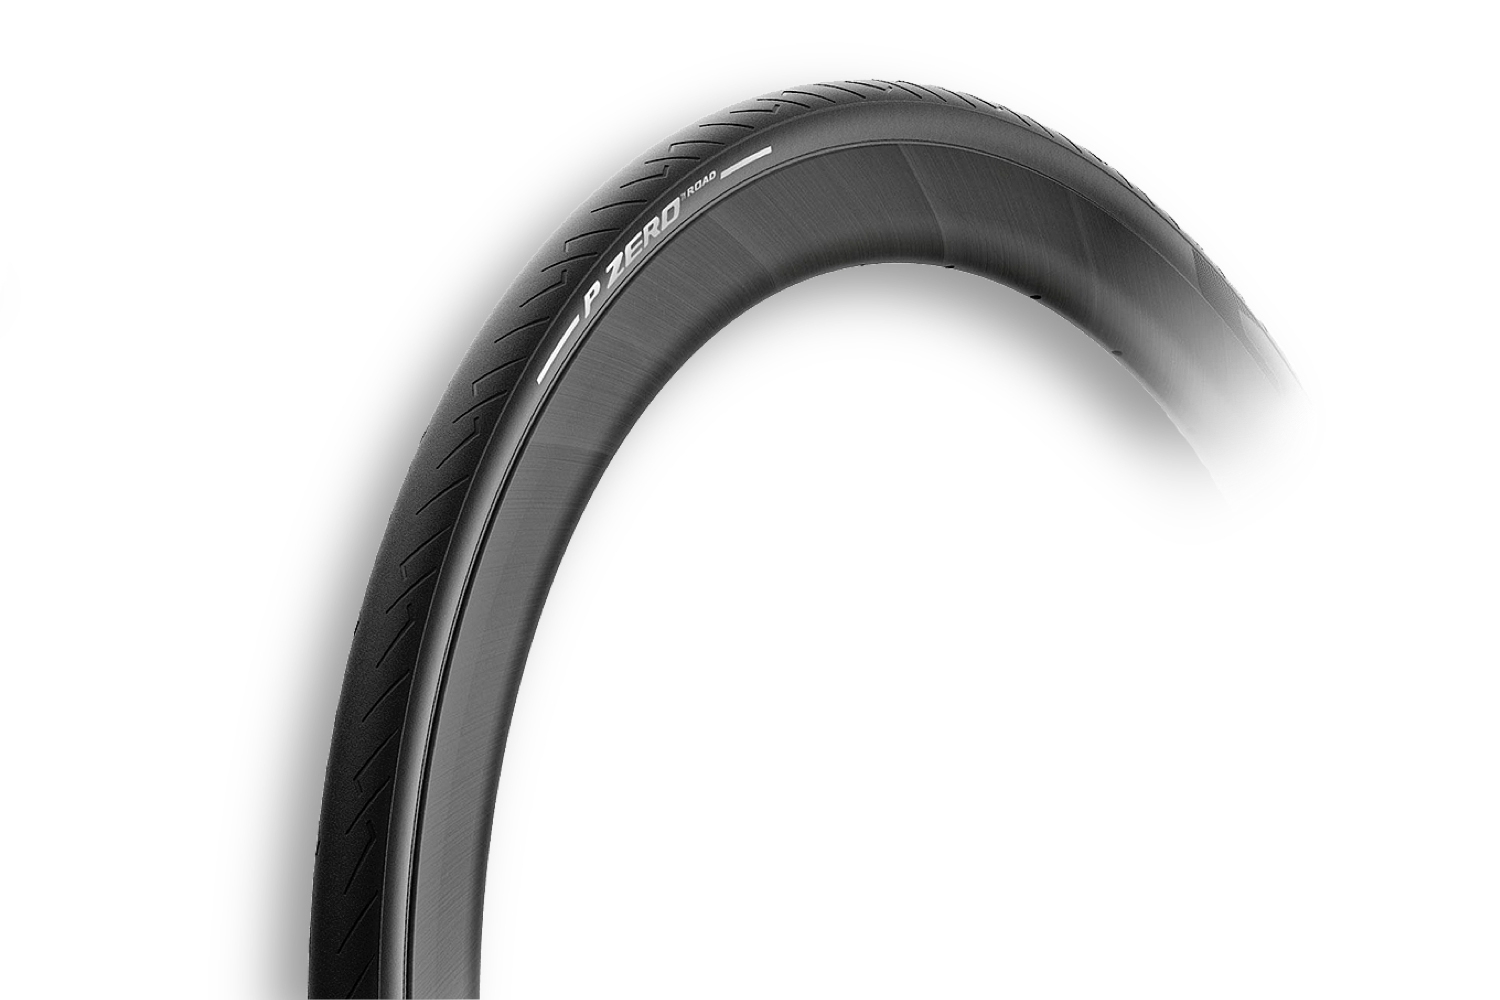  Покрышка для велосипеда Pirelli P Zero Road, 700x26C, X черный 2.8"